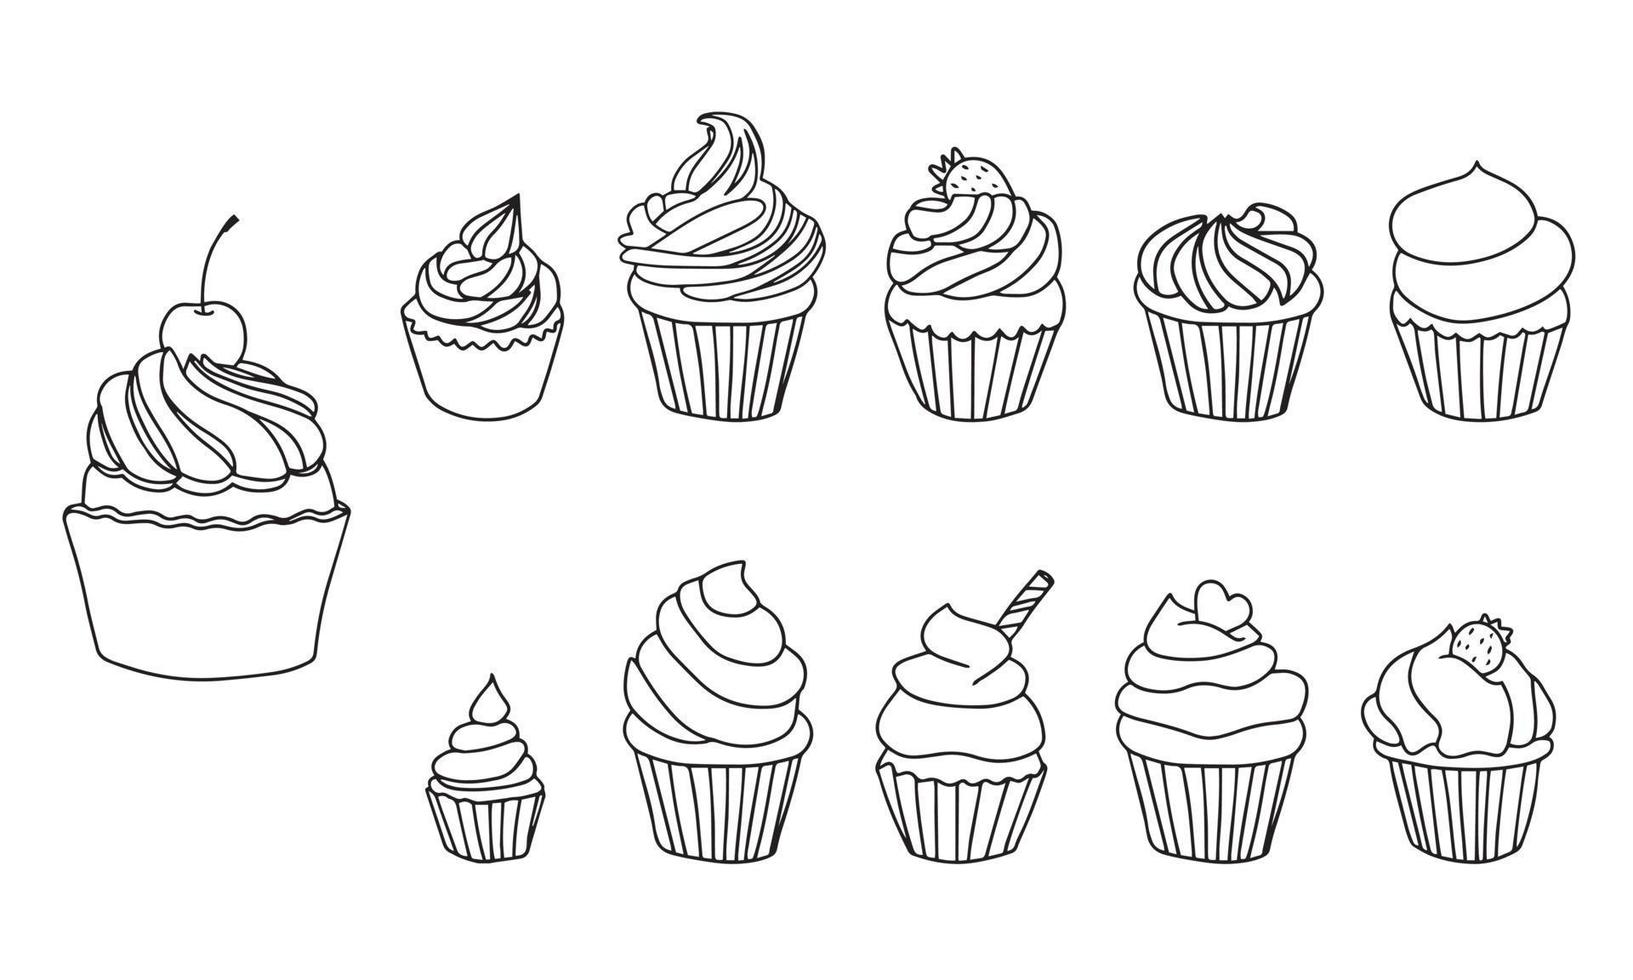 ensemble de petits gâteaux. illustration dessinée à la main en noir et blanc de cupcakes décorés de crème, beignet, cerise et coeurs. isolé sur fond blanc. vecteur